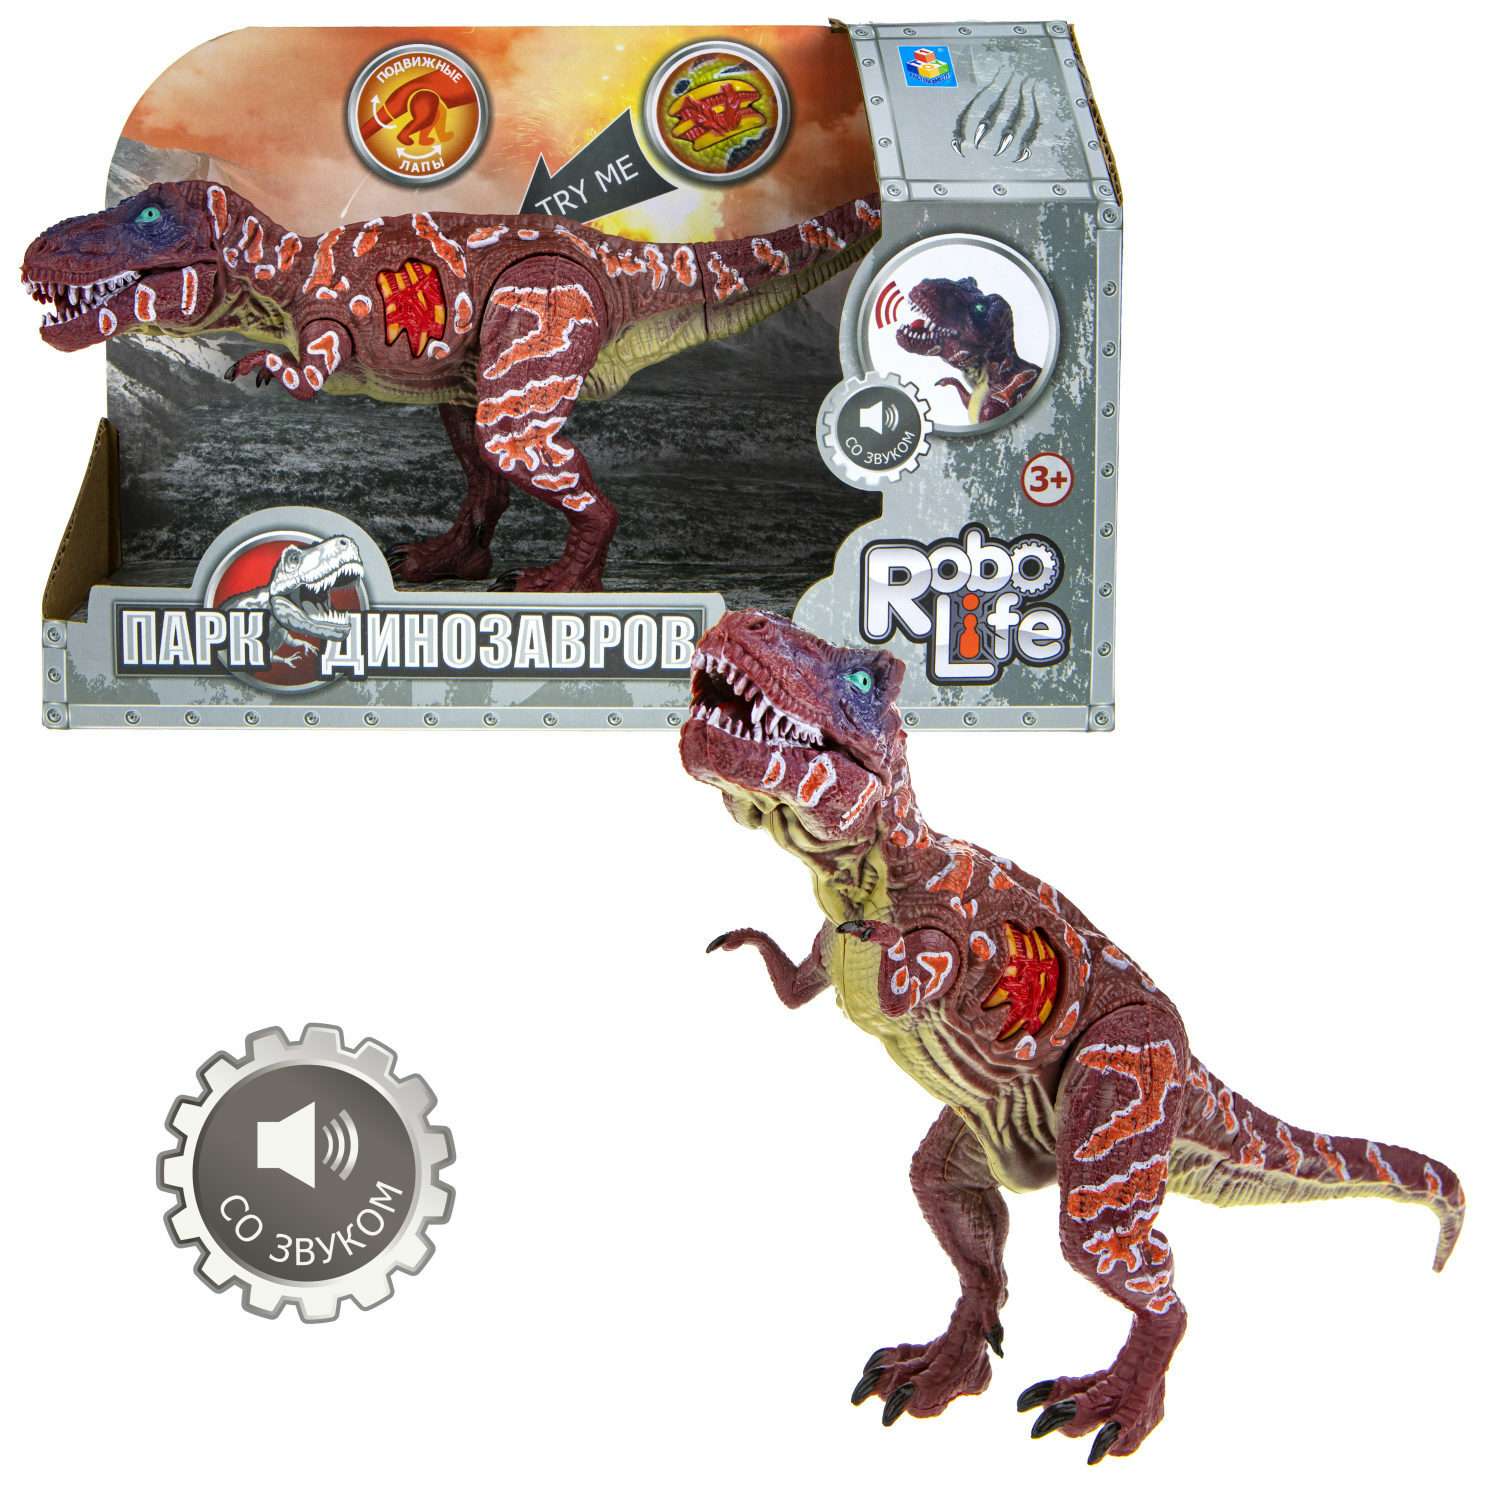 Интерактивная игрушка Robo Life Динозавр Тираннозавр со звуковыми эффектами - фото 4